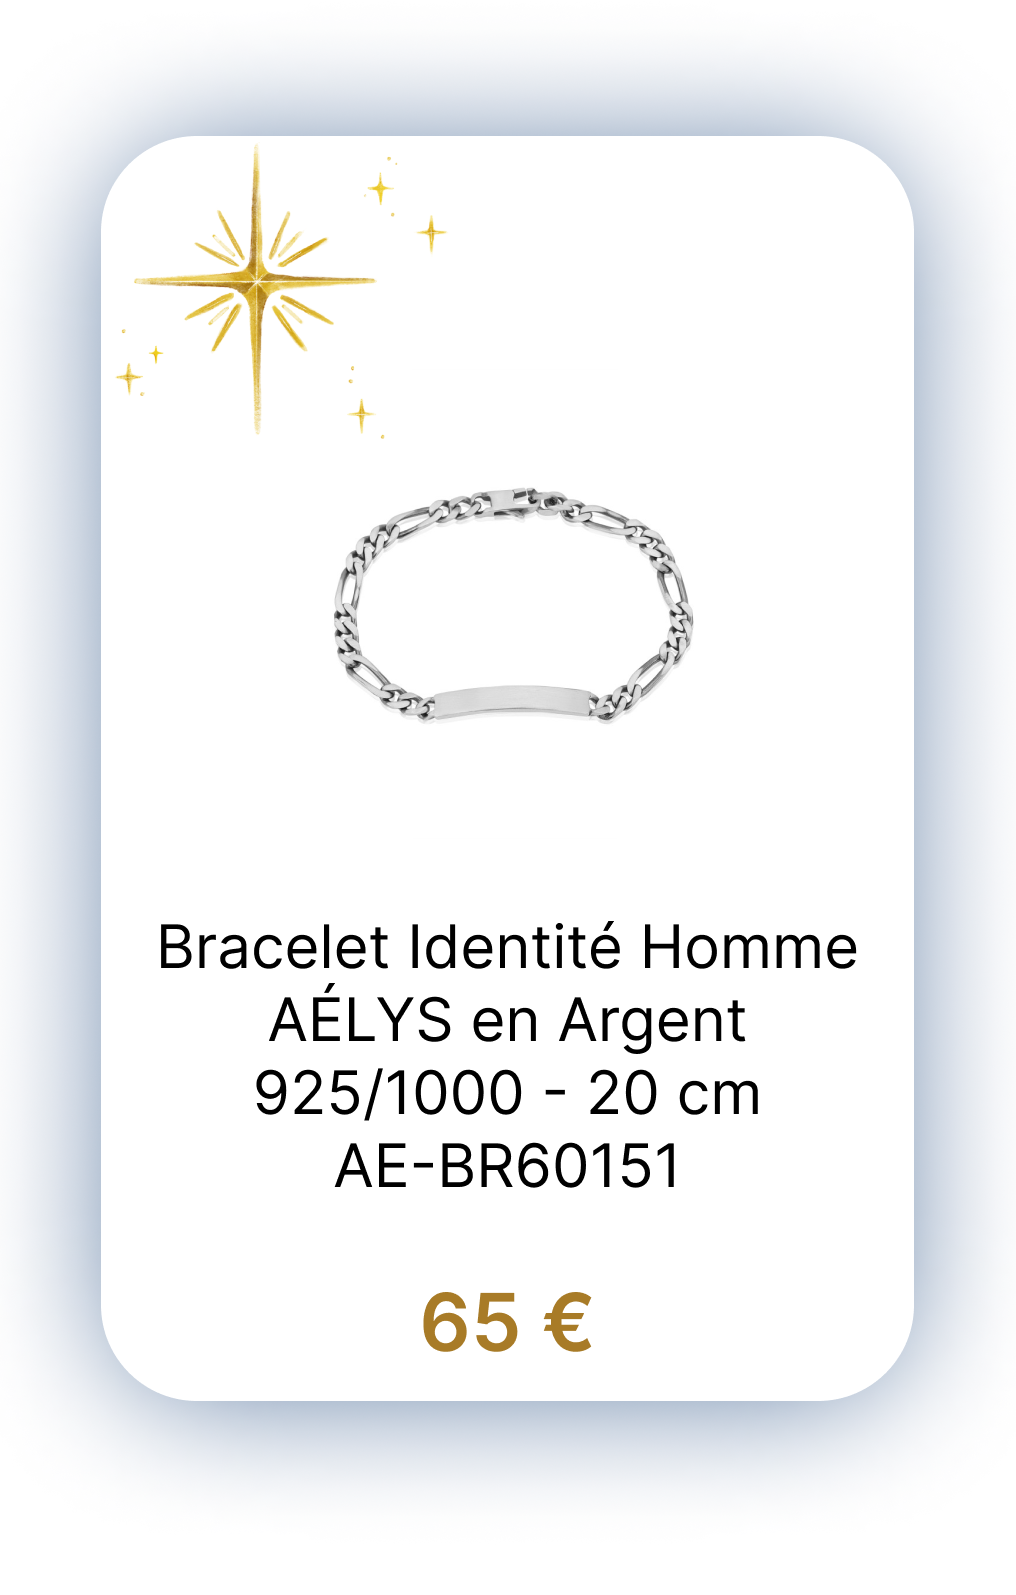 Bracelet Identité Homme AÉLYS en Argent 925-1000 -20 cm - AE-BR60151.png